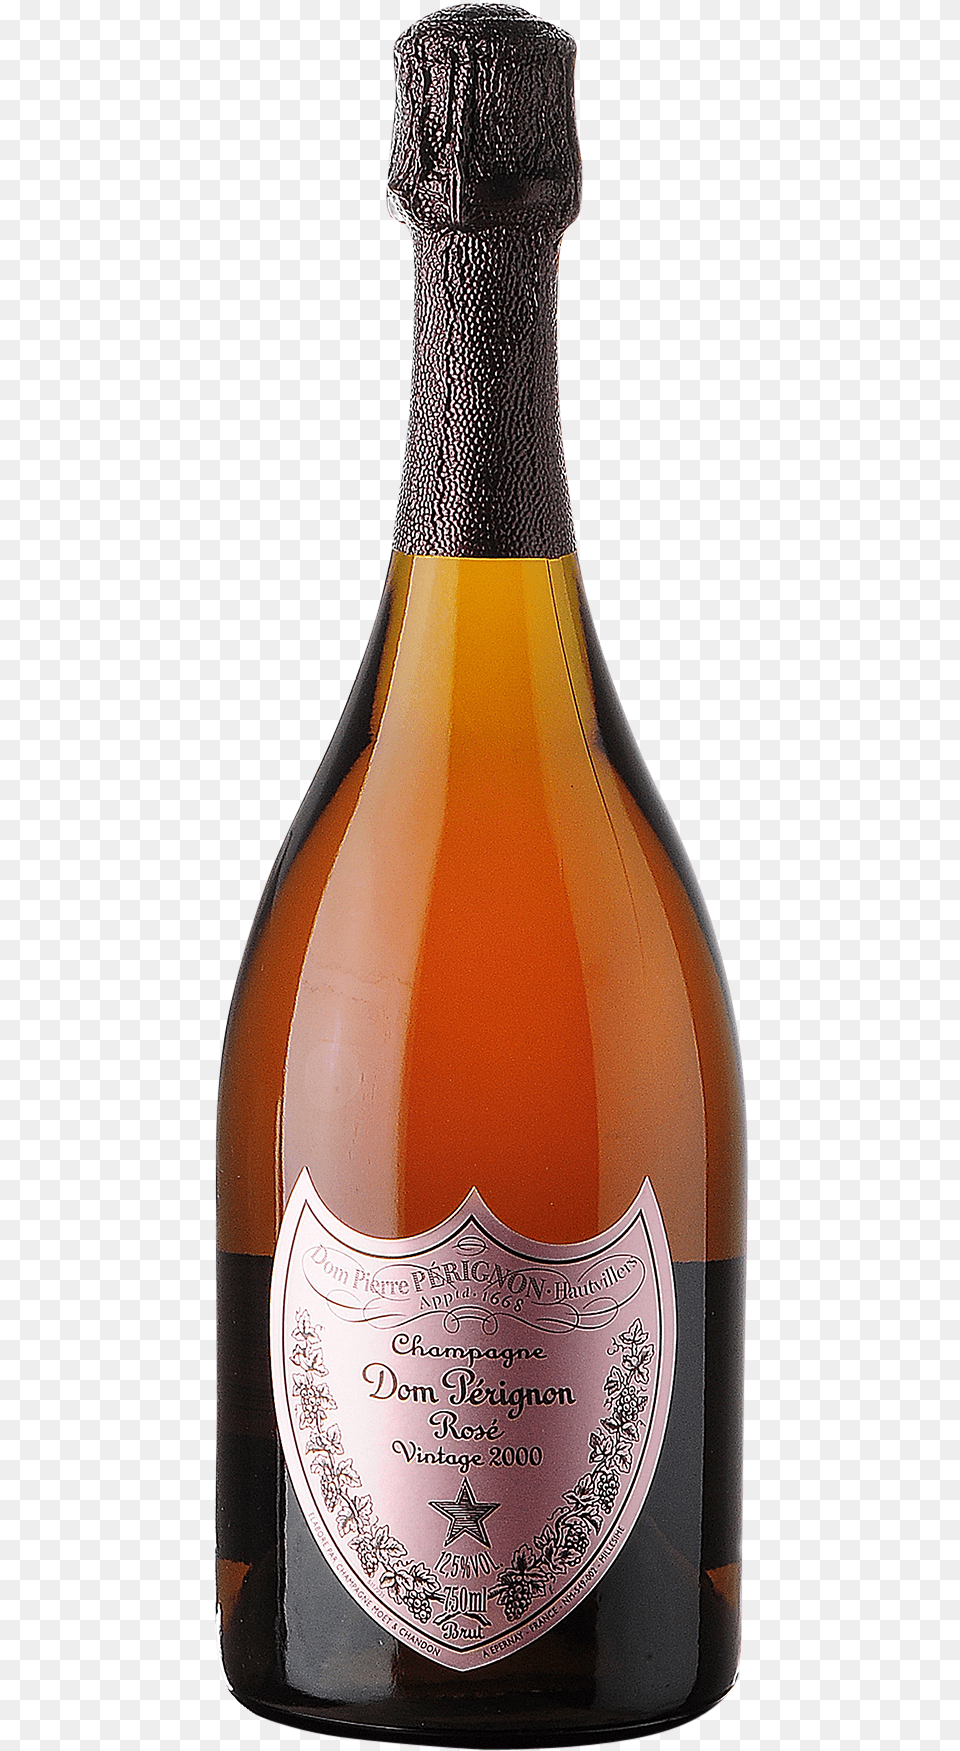 Dom Prignon Ros Mot Hennessy 2004 150 Cl Champagne, Alcohol, Beer, Beverage, Bottle Free Transparent Png